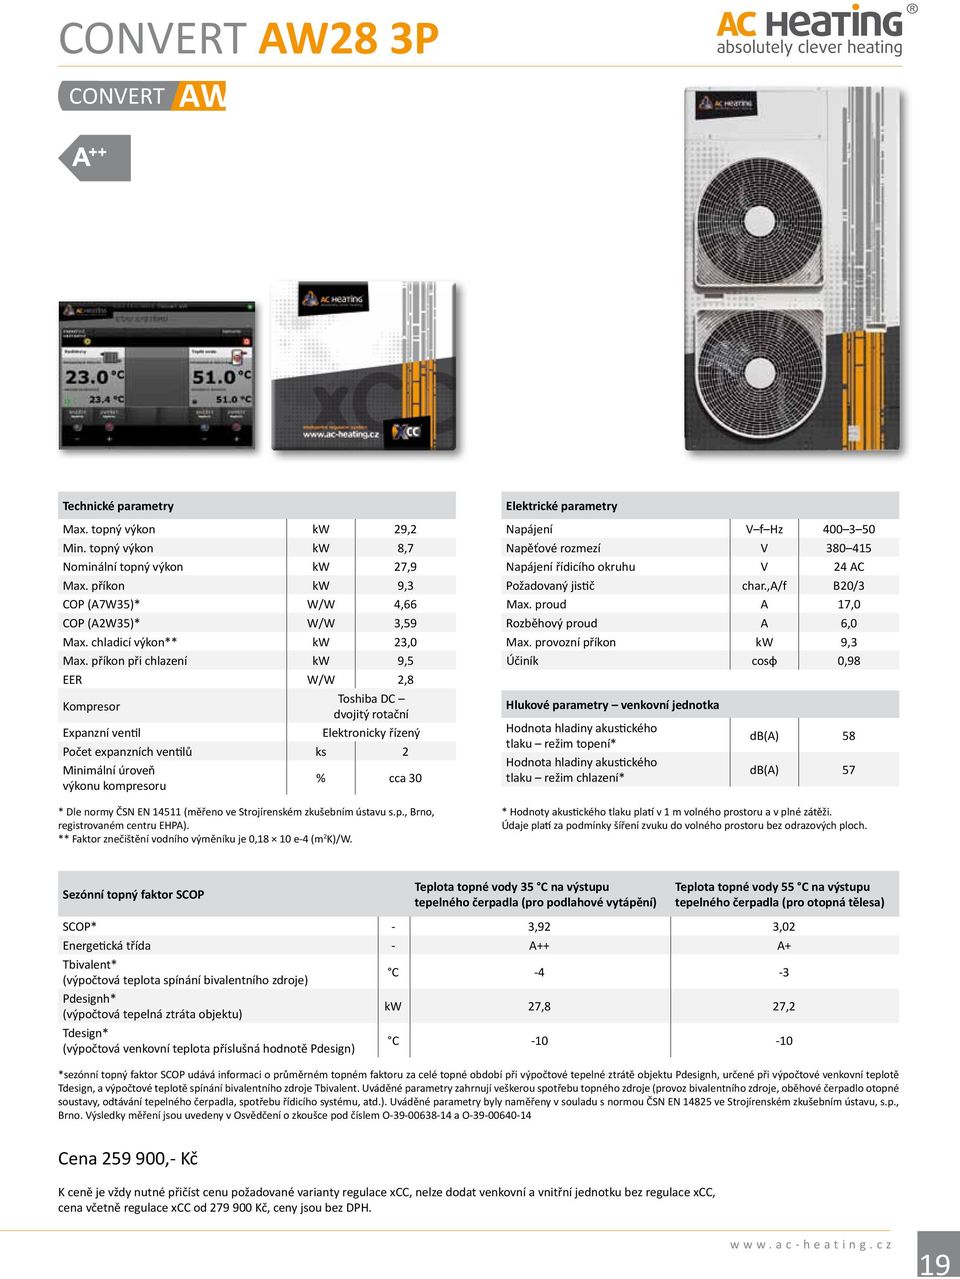 příkon při chlazení kw 9,5 EER W/W 2,8 Kompresor Toshiba DC dvojitý rotační Expanzní ventil Elektronicky řízený Počet expanzních ventilů ks 2 Minimální úroveň výkonu kompresoru % cca 30 * Dle normy